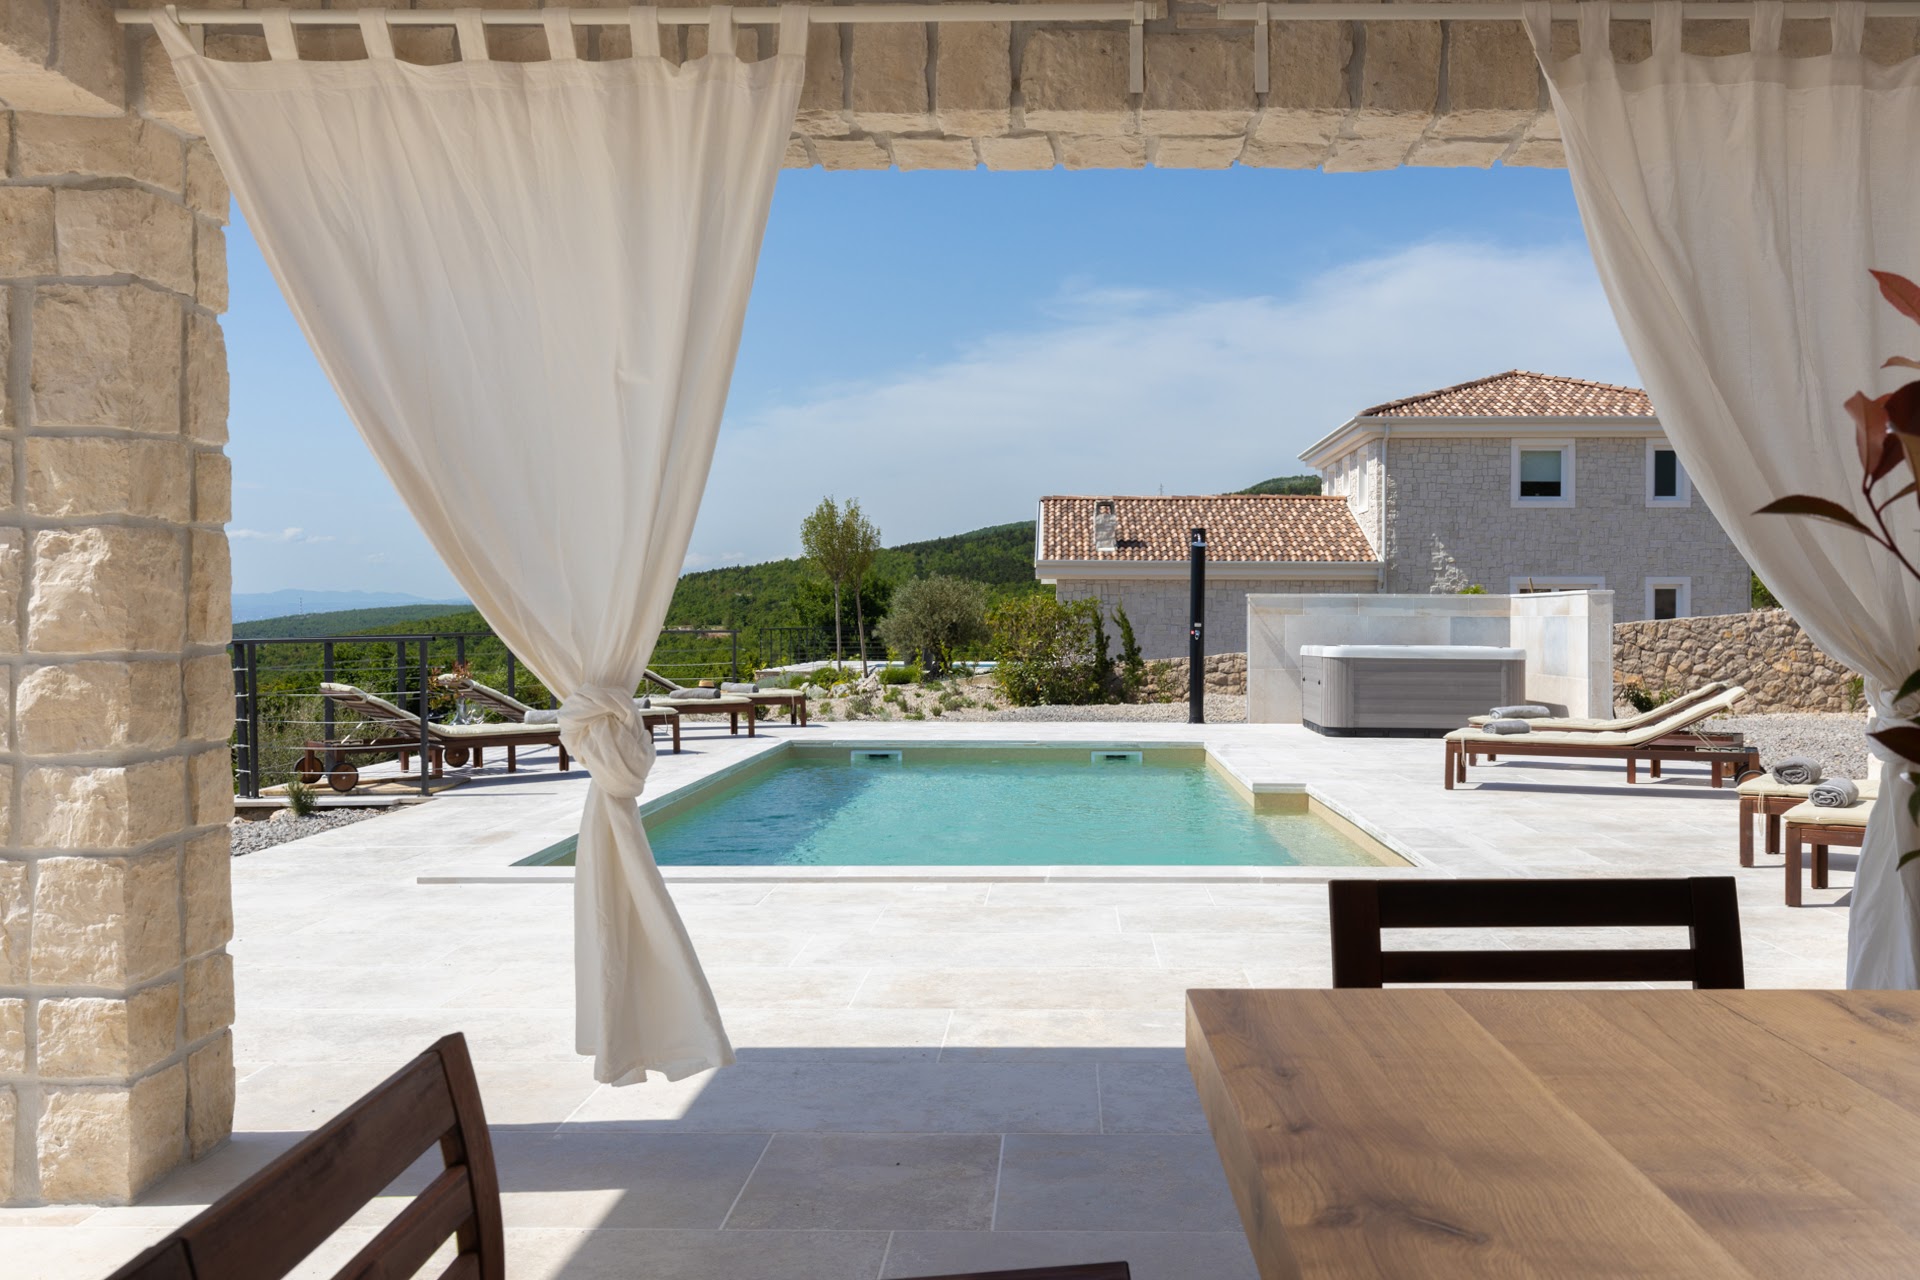 Sea view stone villa for sale in Croatia Crikvenica, new swimming pool